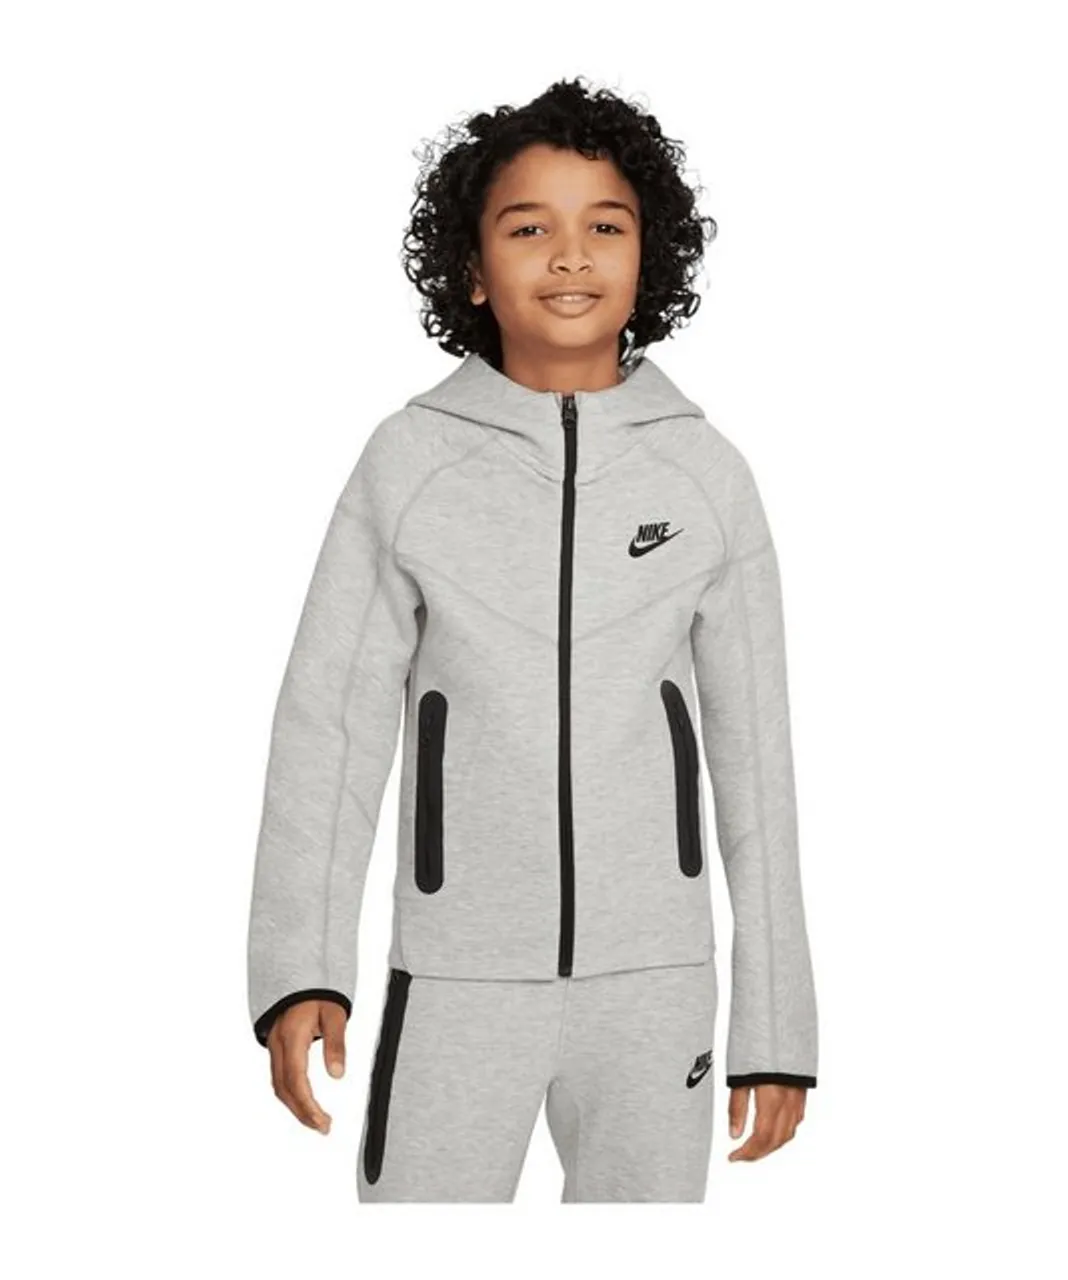 Nike Sportswear Sweatjacke Tech Fleece Jacke Kids